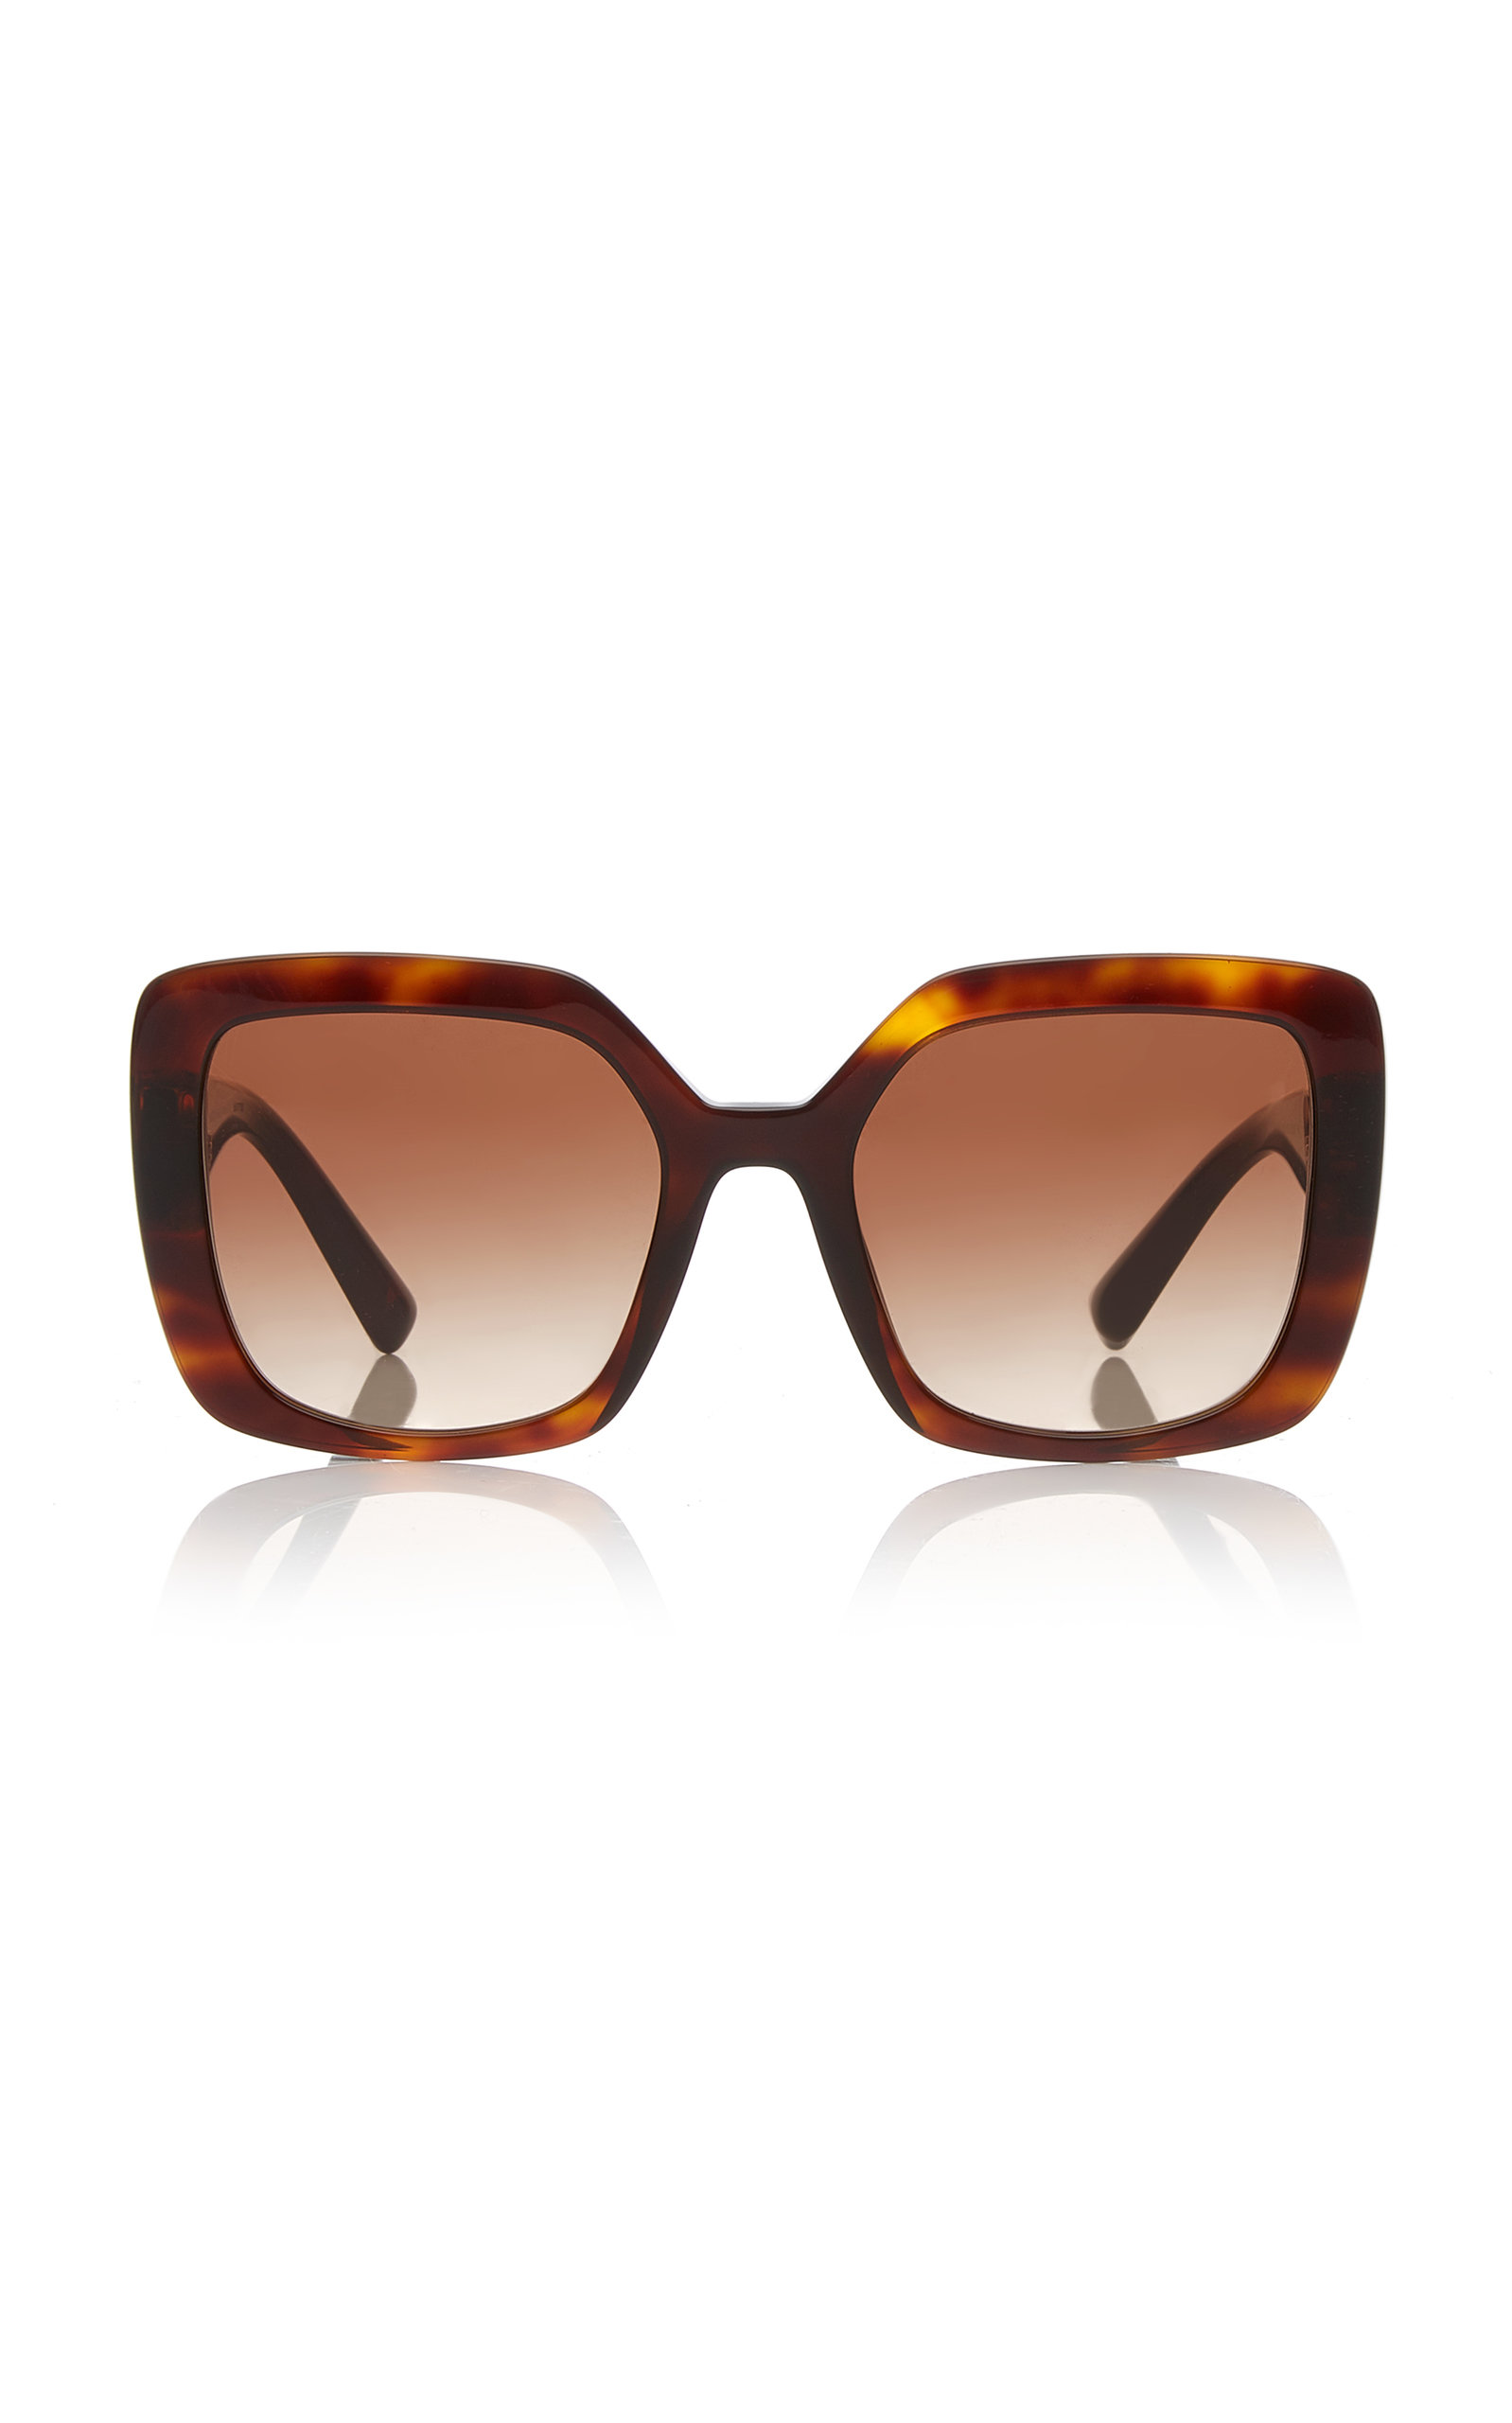 Valentino - Women's Valentino Garavani Logo Square-Frame Acetate Sunglasses - Brown - Moda Operandi